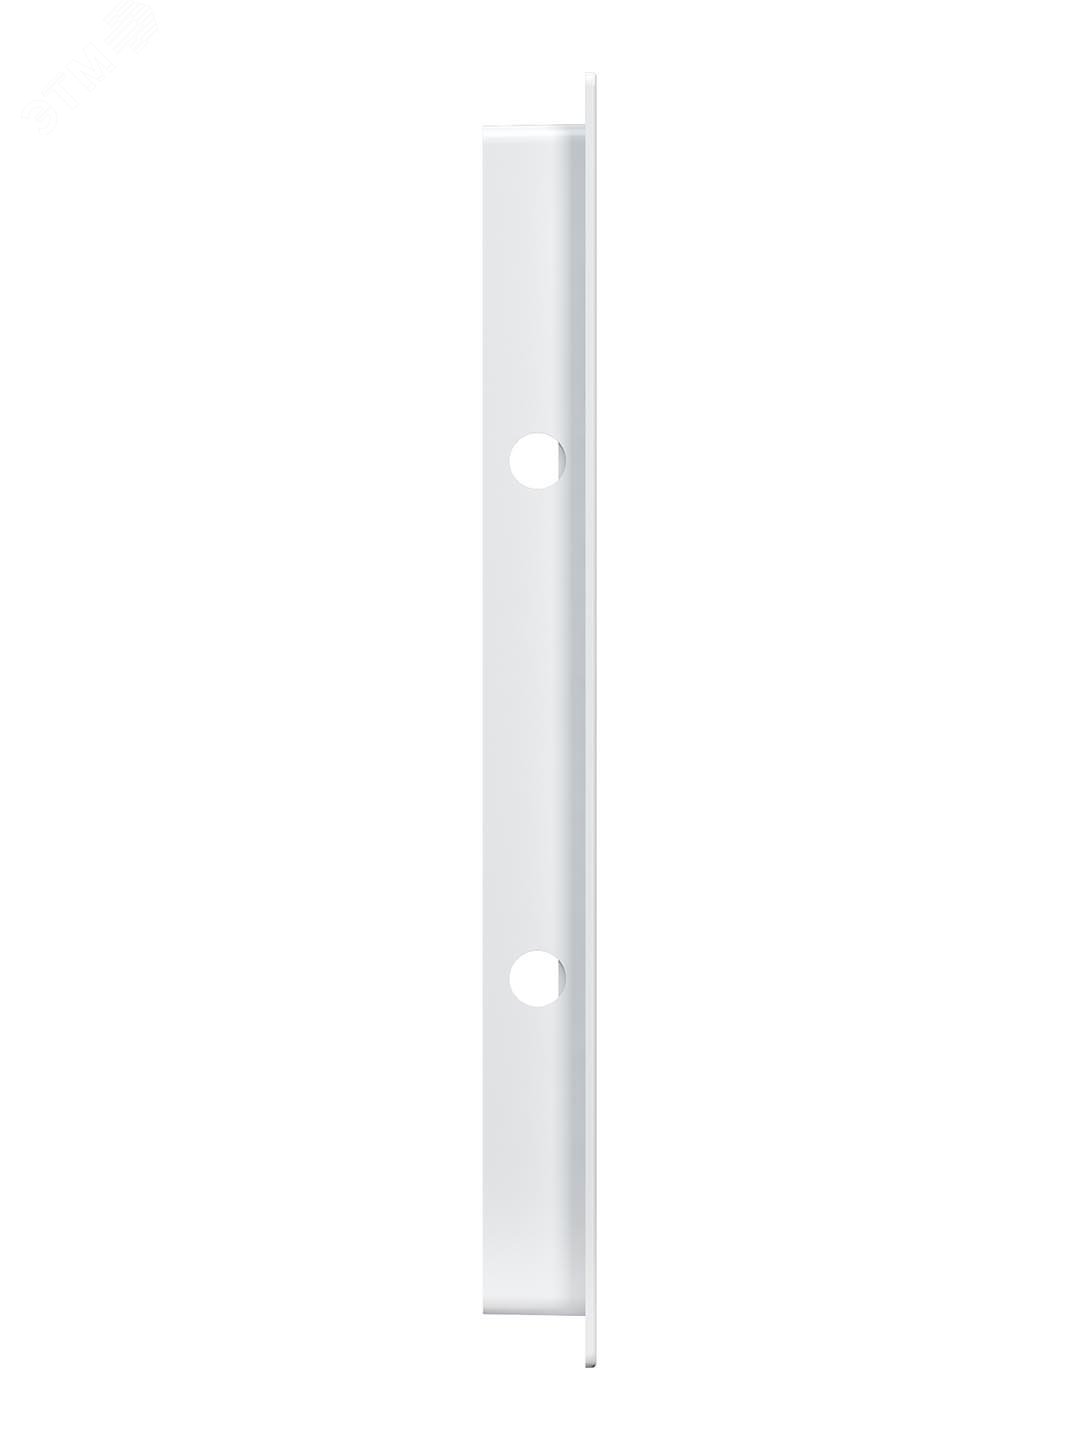 Люк-дверца ревизионный пластиковый нажимной 224х274 с фланцем 200х250 L2025N EVECS - превью 3